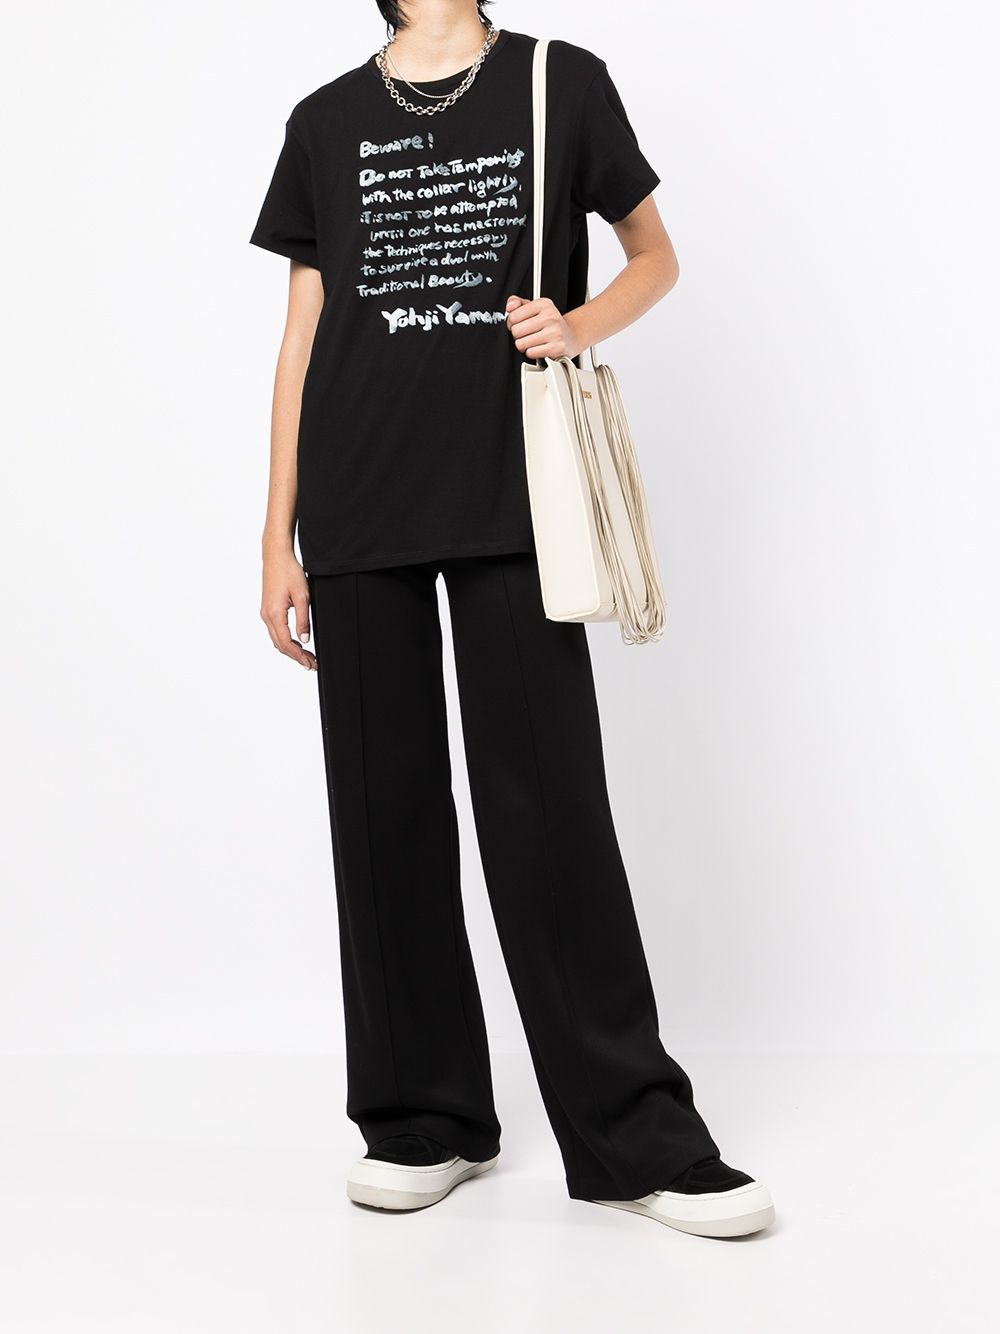 Yohji Yamamoto T-shirt met tekst - Zwart